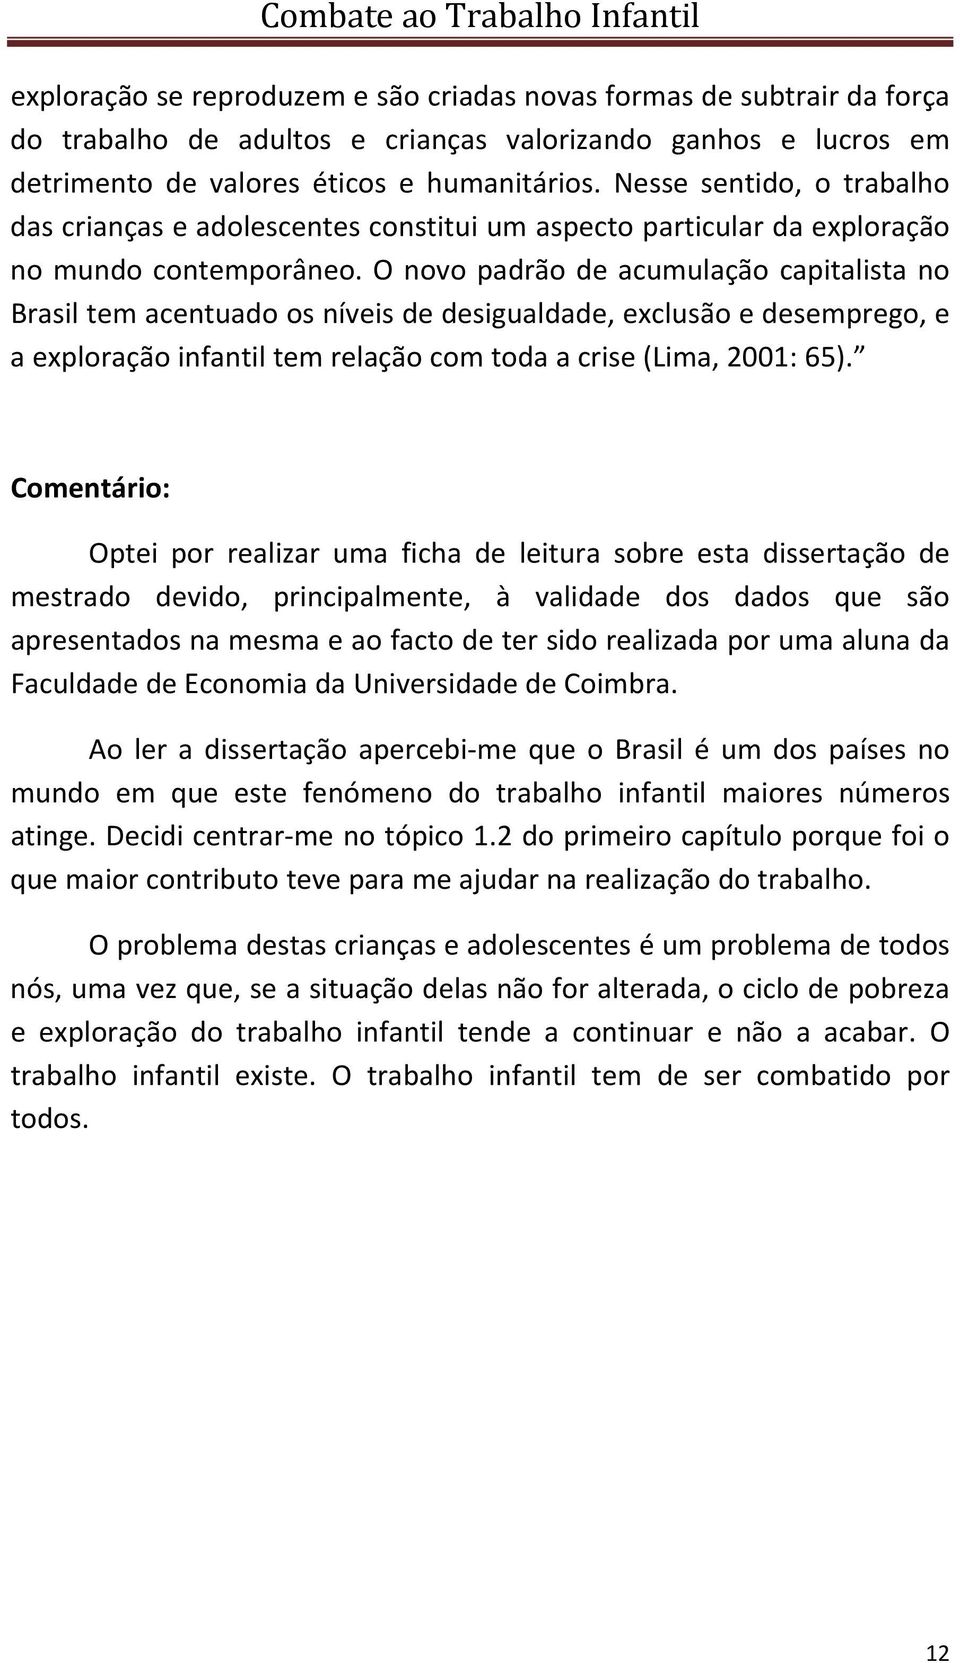 O novo padrão de acumulação capitalista no Brasil tem acentuado os níveis de desigualdade, exclusão e desemprego, e a exploração infantil tem relação com toda a crise (Lima, 2001: 65).